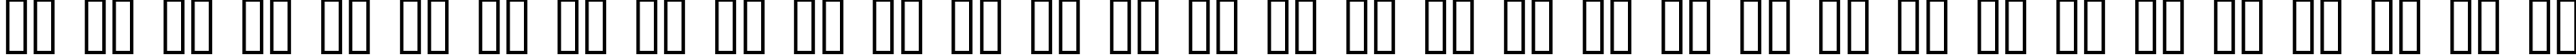 Пример написания русского алфавита шрифтом Transformers Hollow  Normal